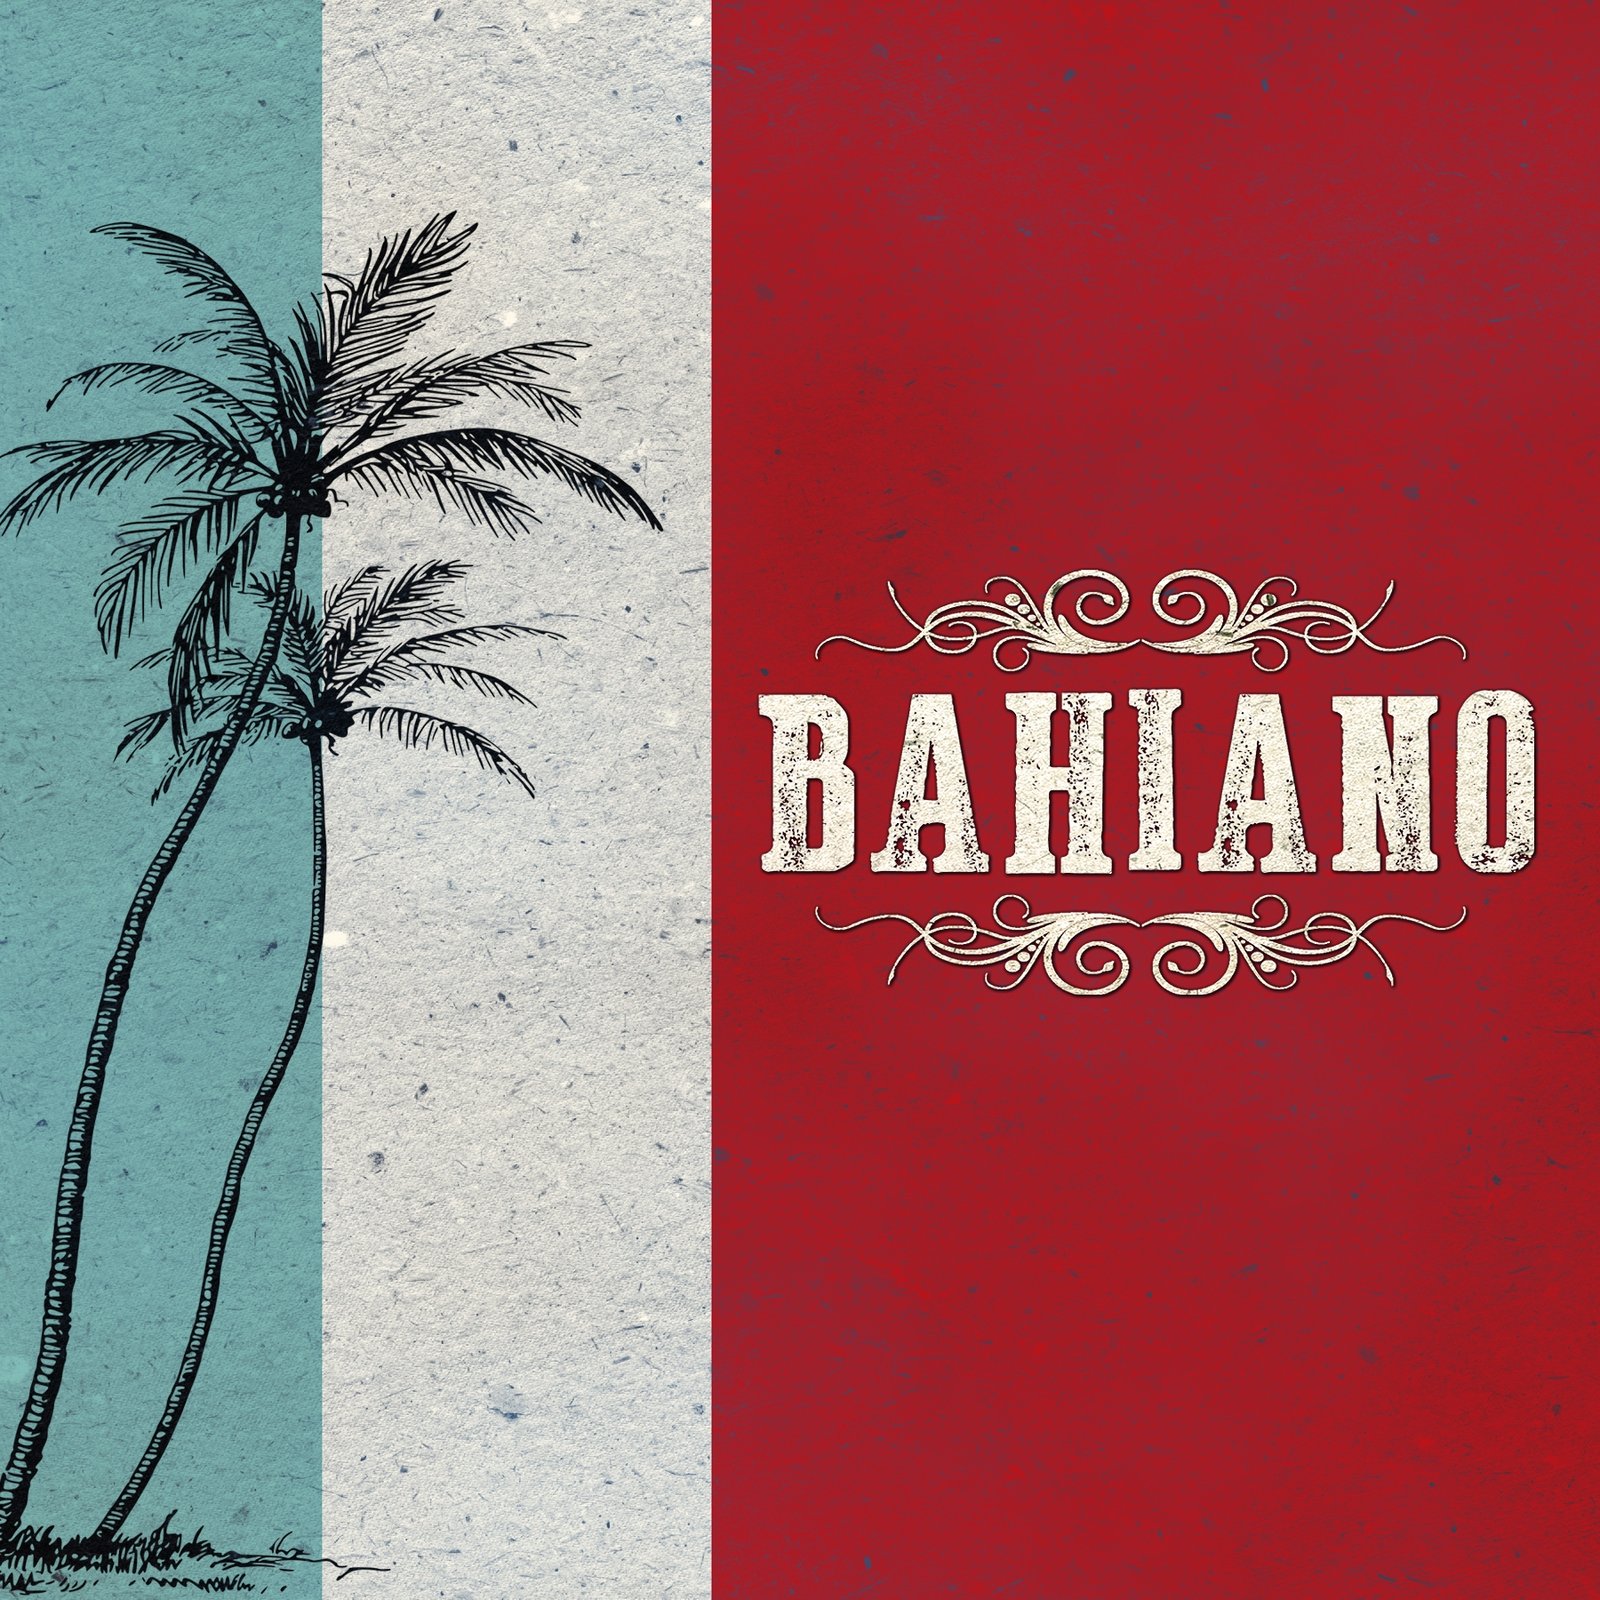 Bahiano presenta “A mi manera yo voy”, primer sencillo del álbum“Original Roots”.